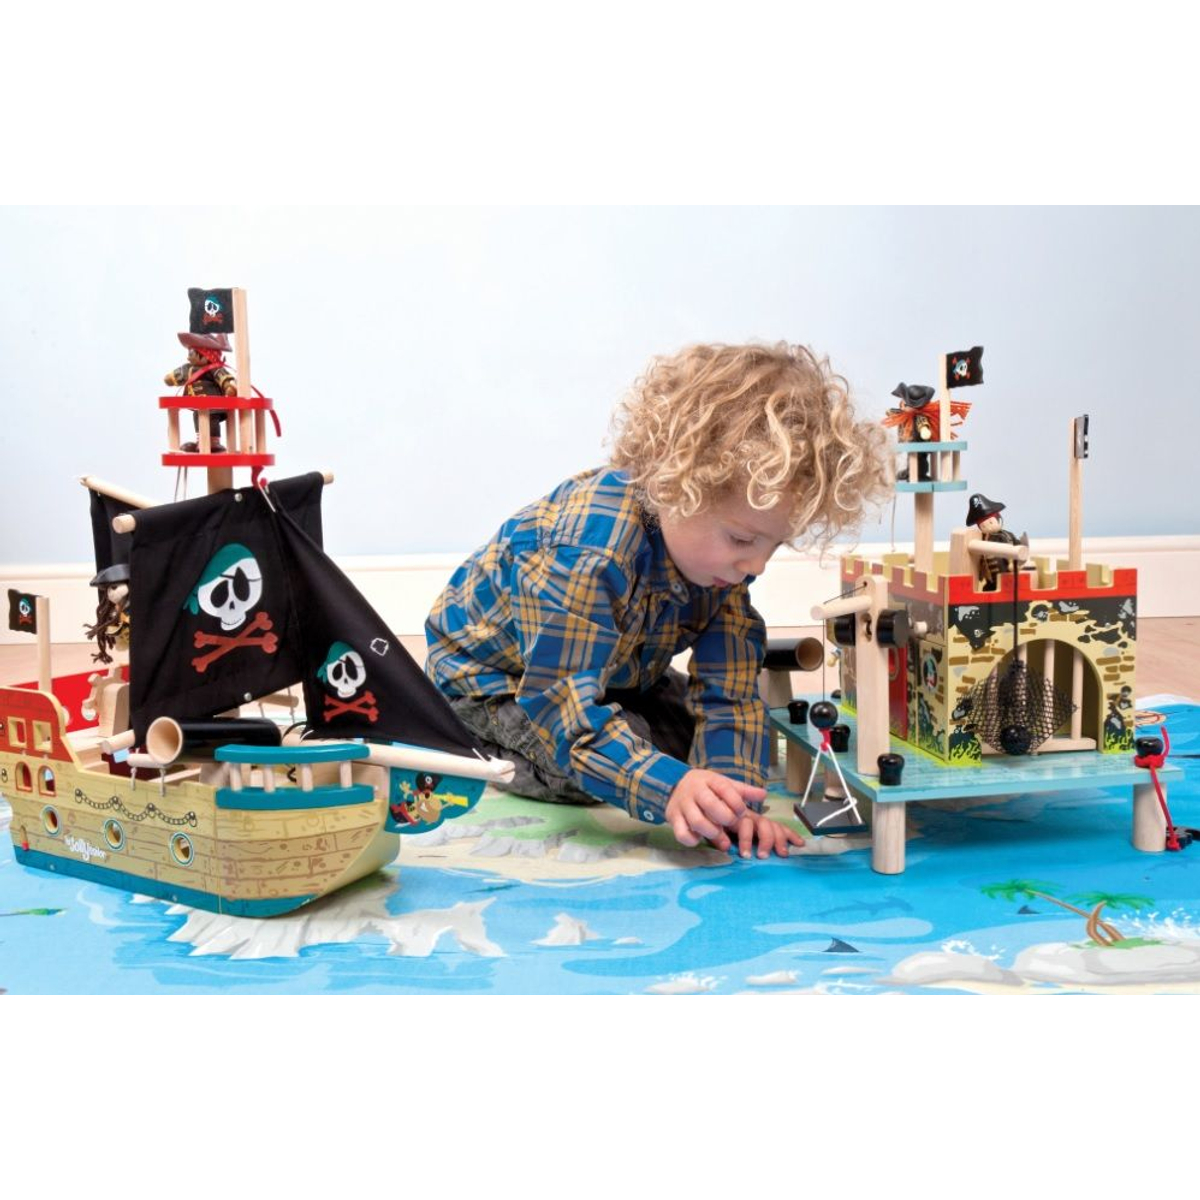 Le Toy Jolly Piraten Schip